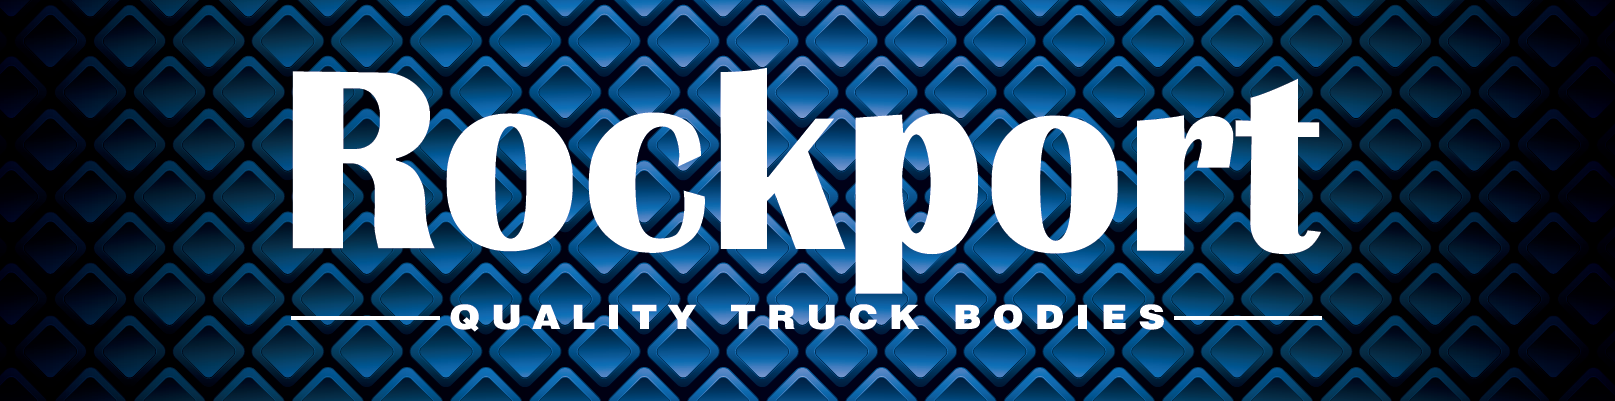 Rockport logo image